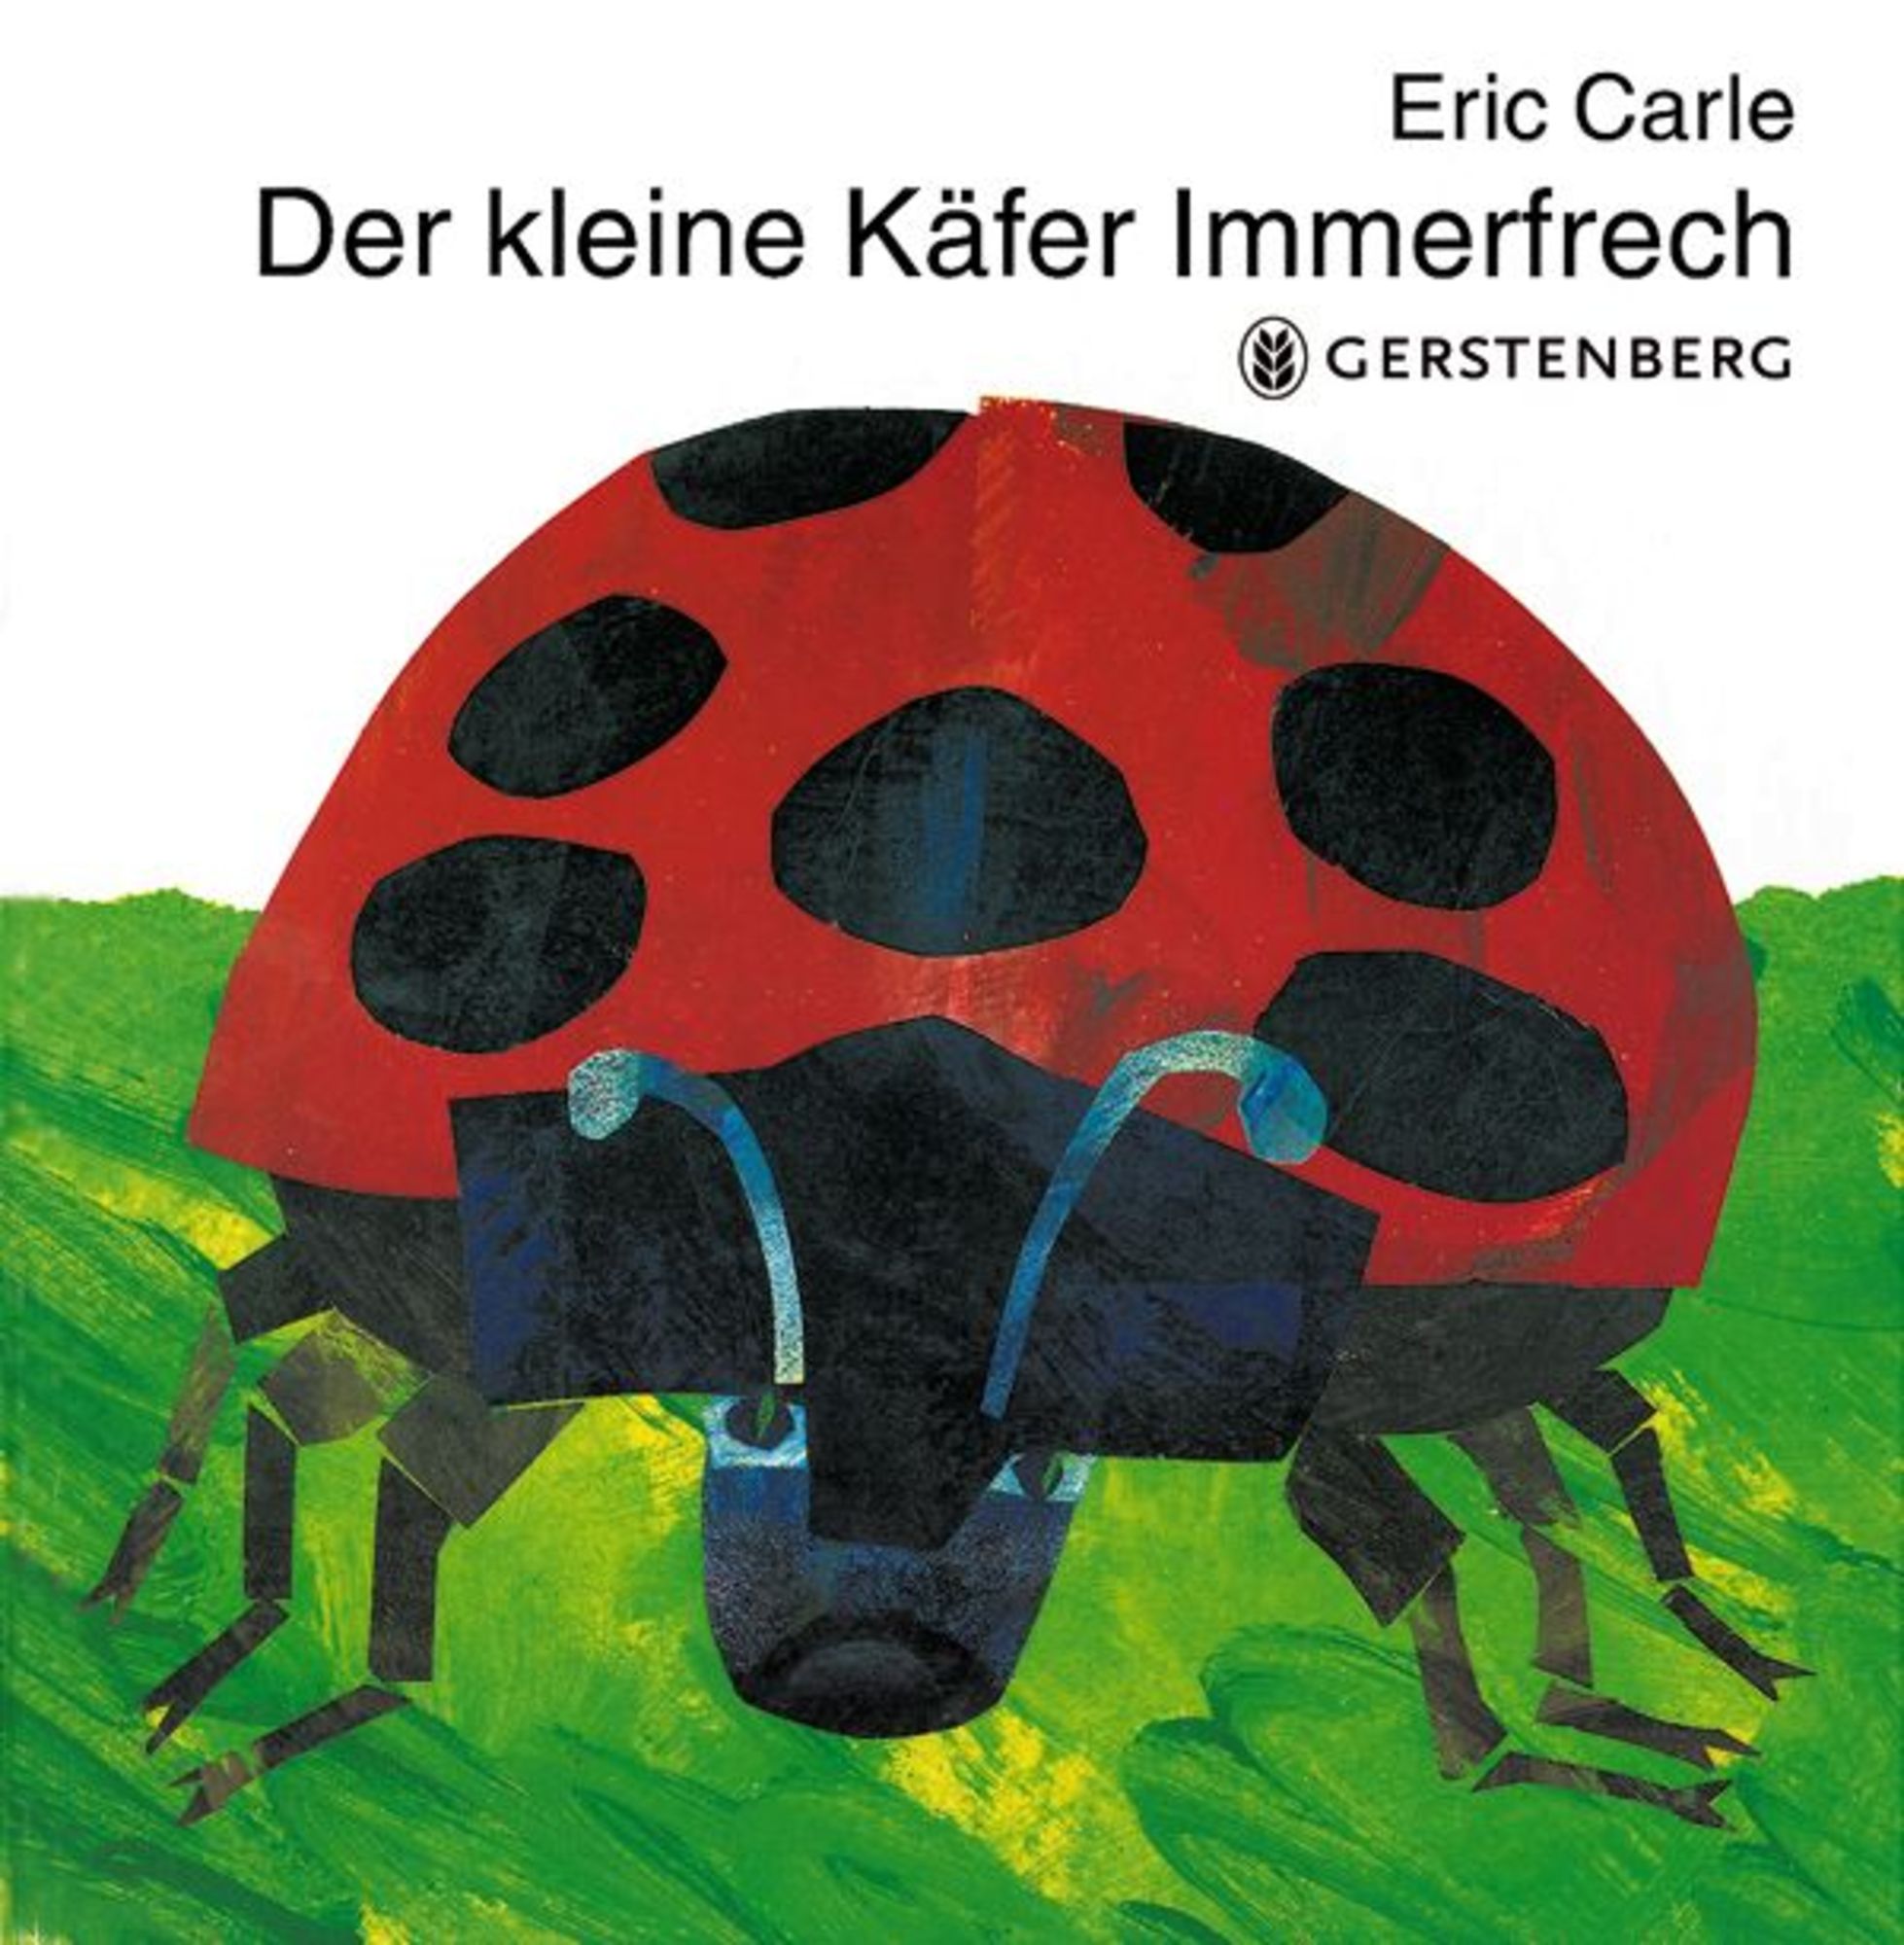 Der kleine Käfer Immerfrech' von 'Eric Carle' - Buch - '978-3-8369